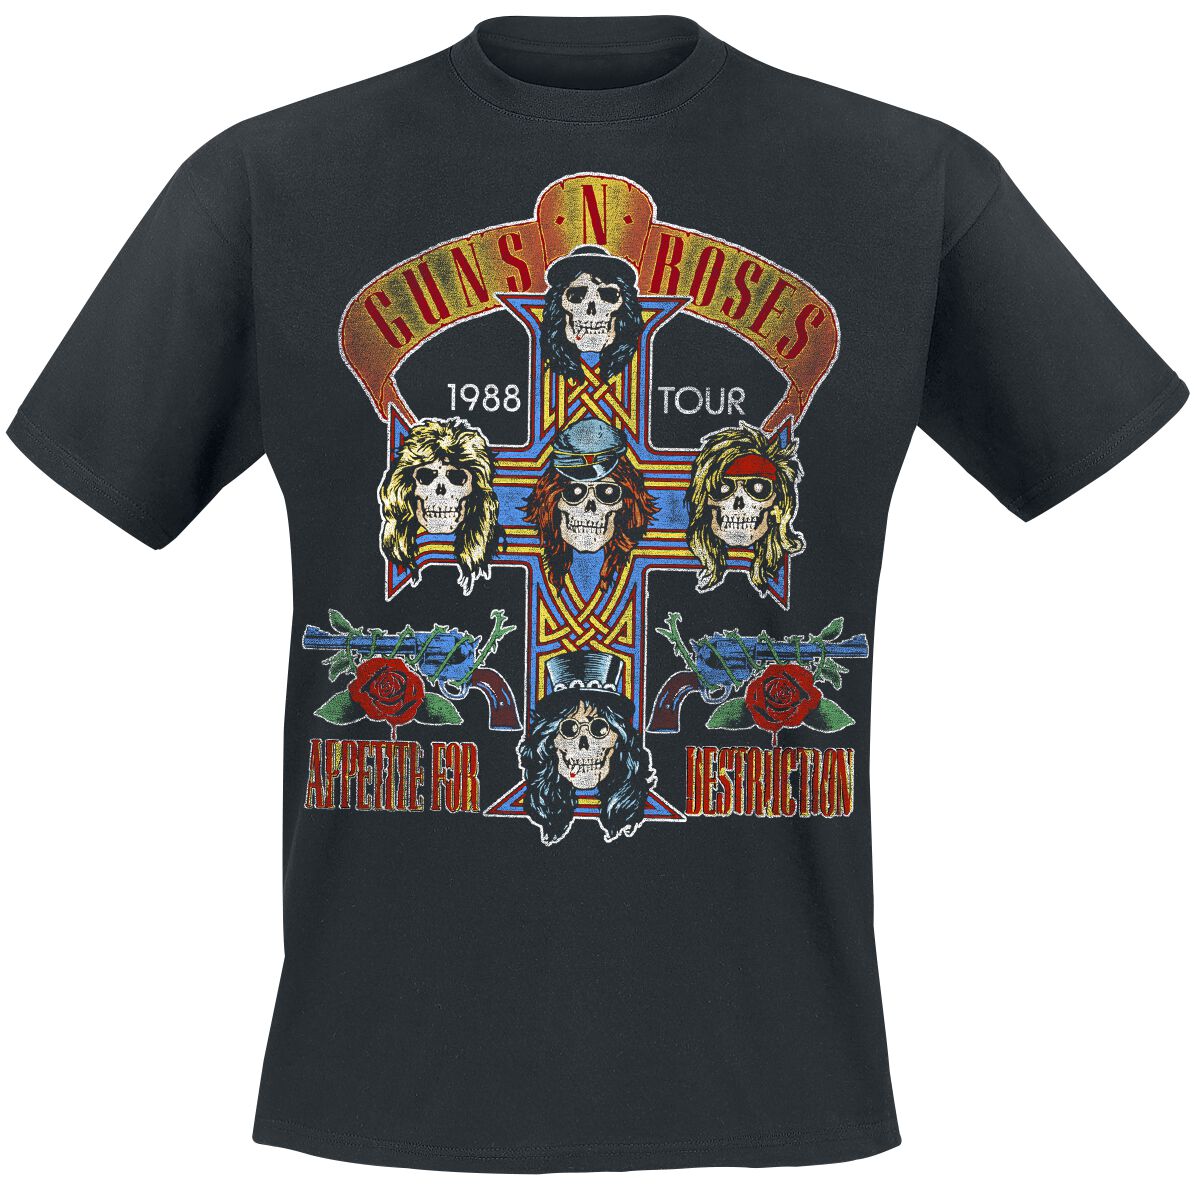 Guns N` Roses T-Shirt - Tour 1988 - S bis 5XL - für Männer - Größe S - schwarz  - Lizenziertes Merchandise!